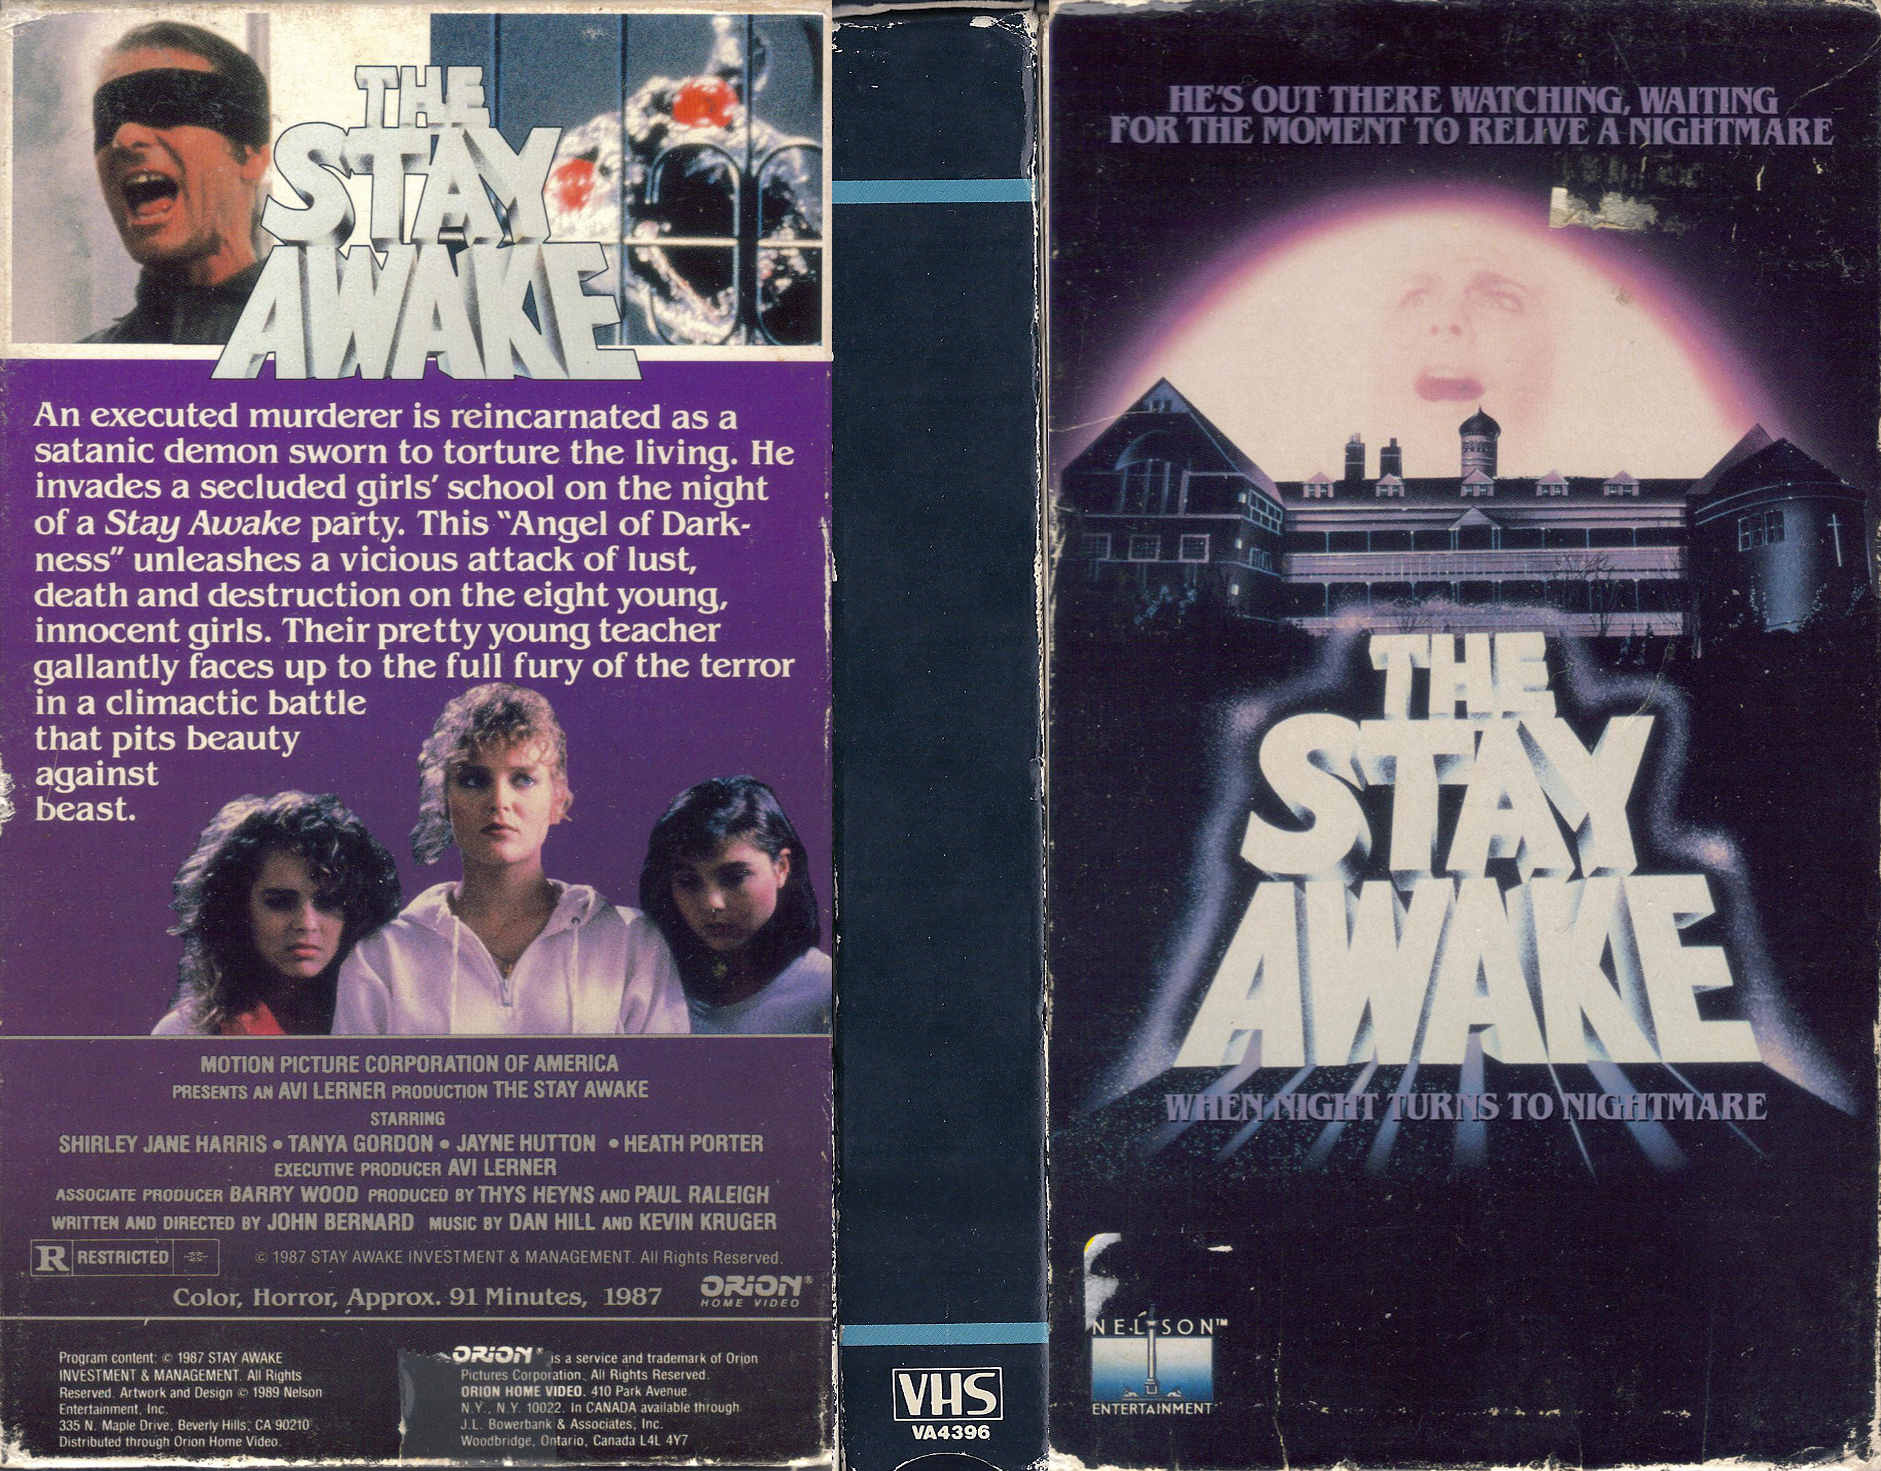 The Stay Awake movie